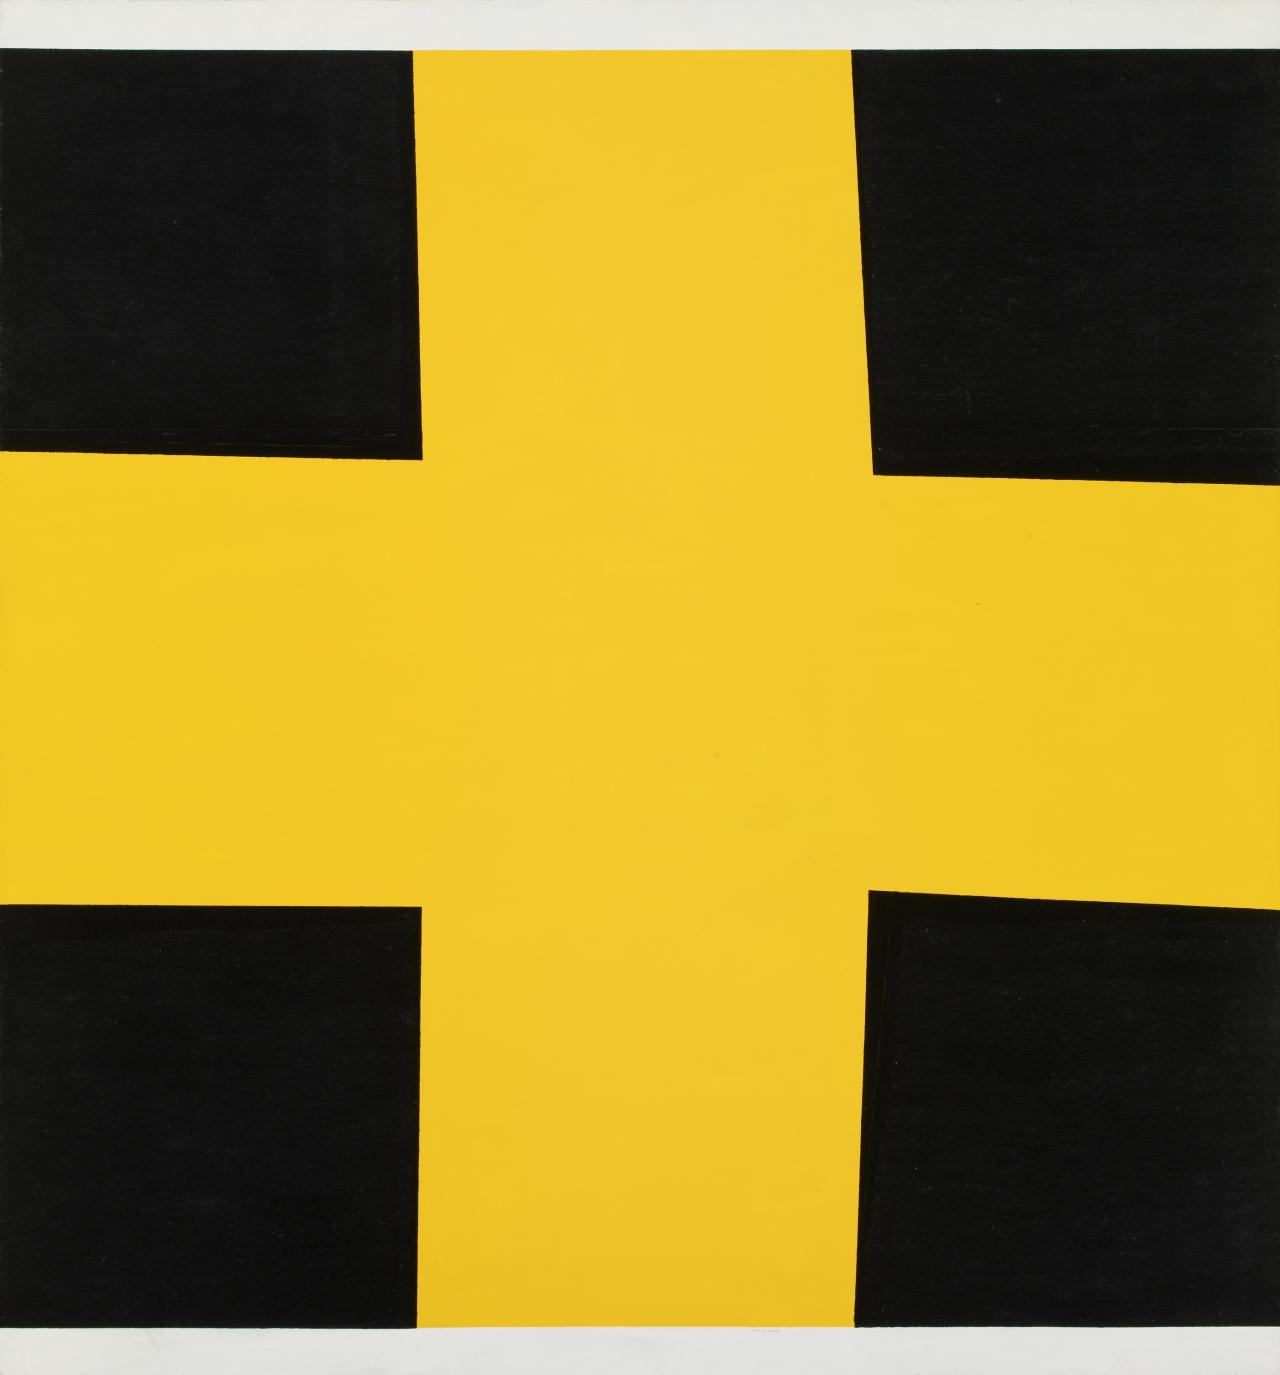 John Nixon, <em>Self Portrait (non-objective composition) (yellow cross)</em> (1990), enamel paint on plywood, 117.6 x 165 cm.